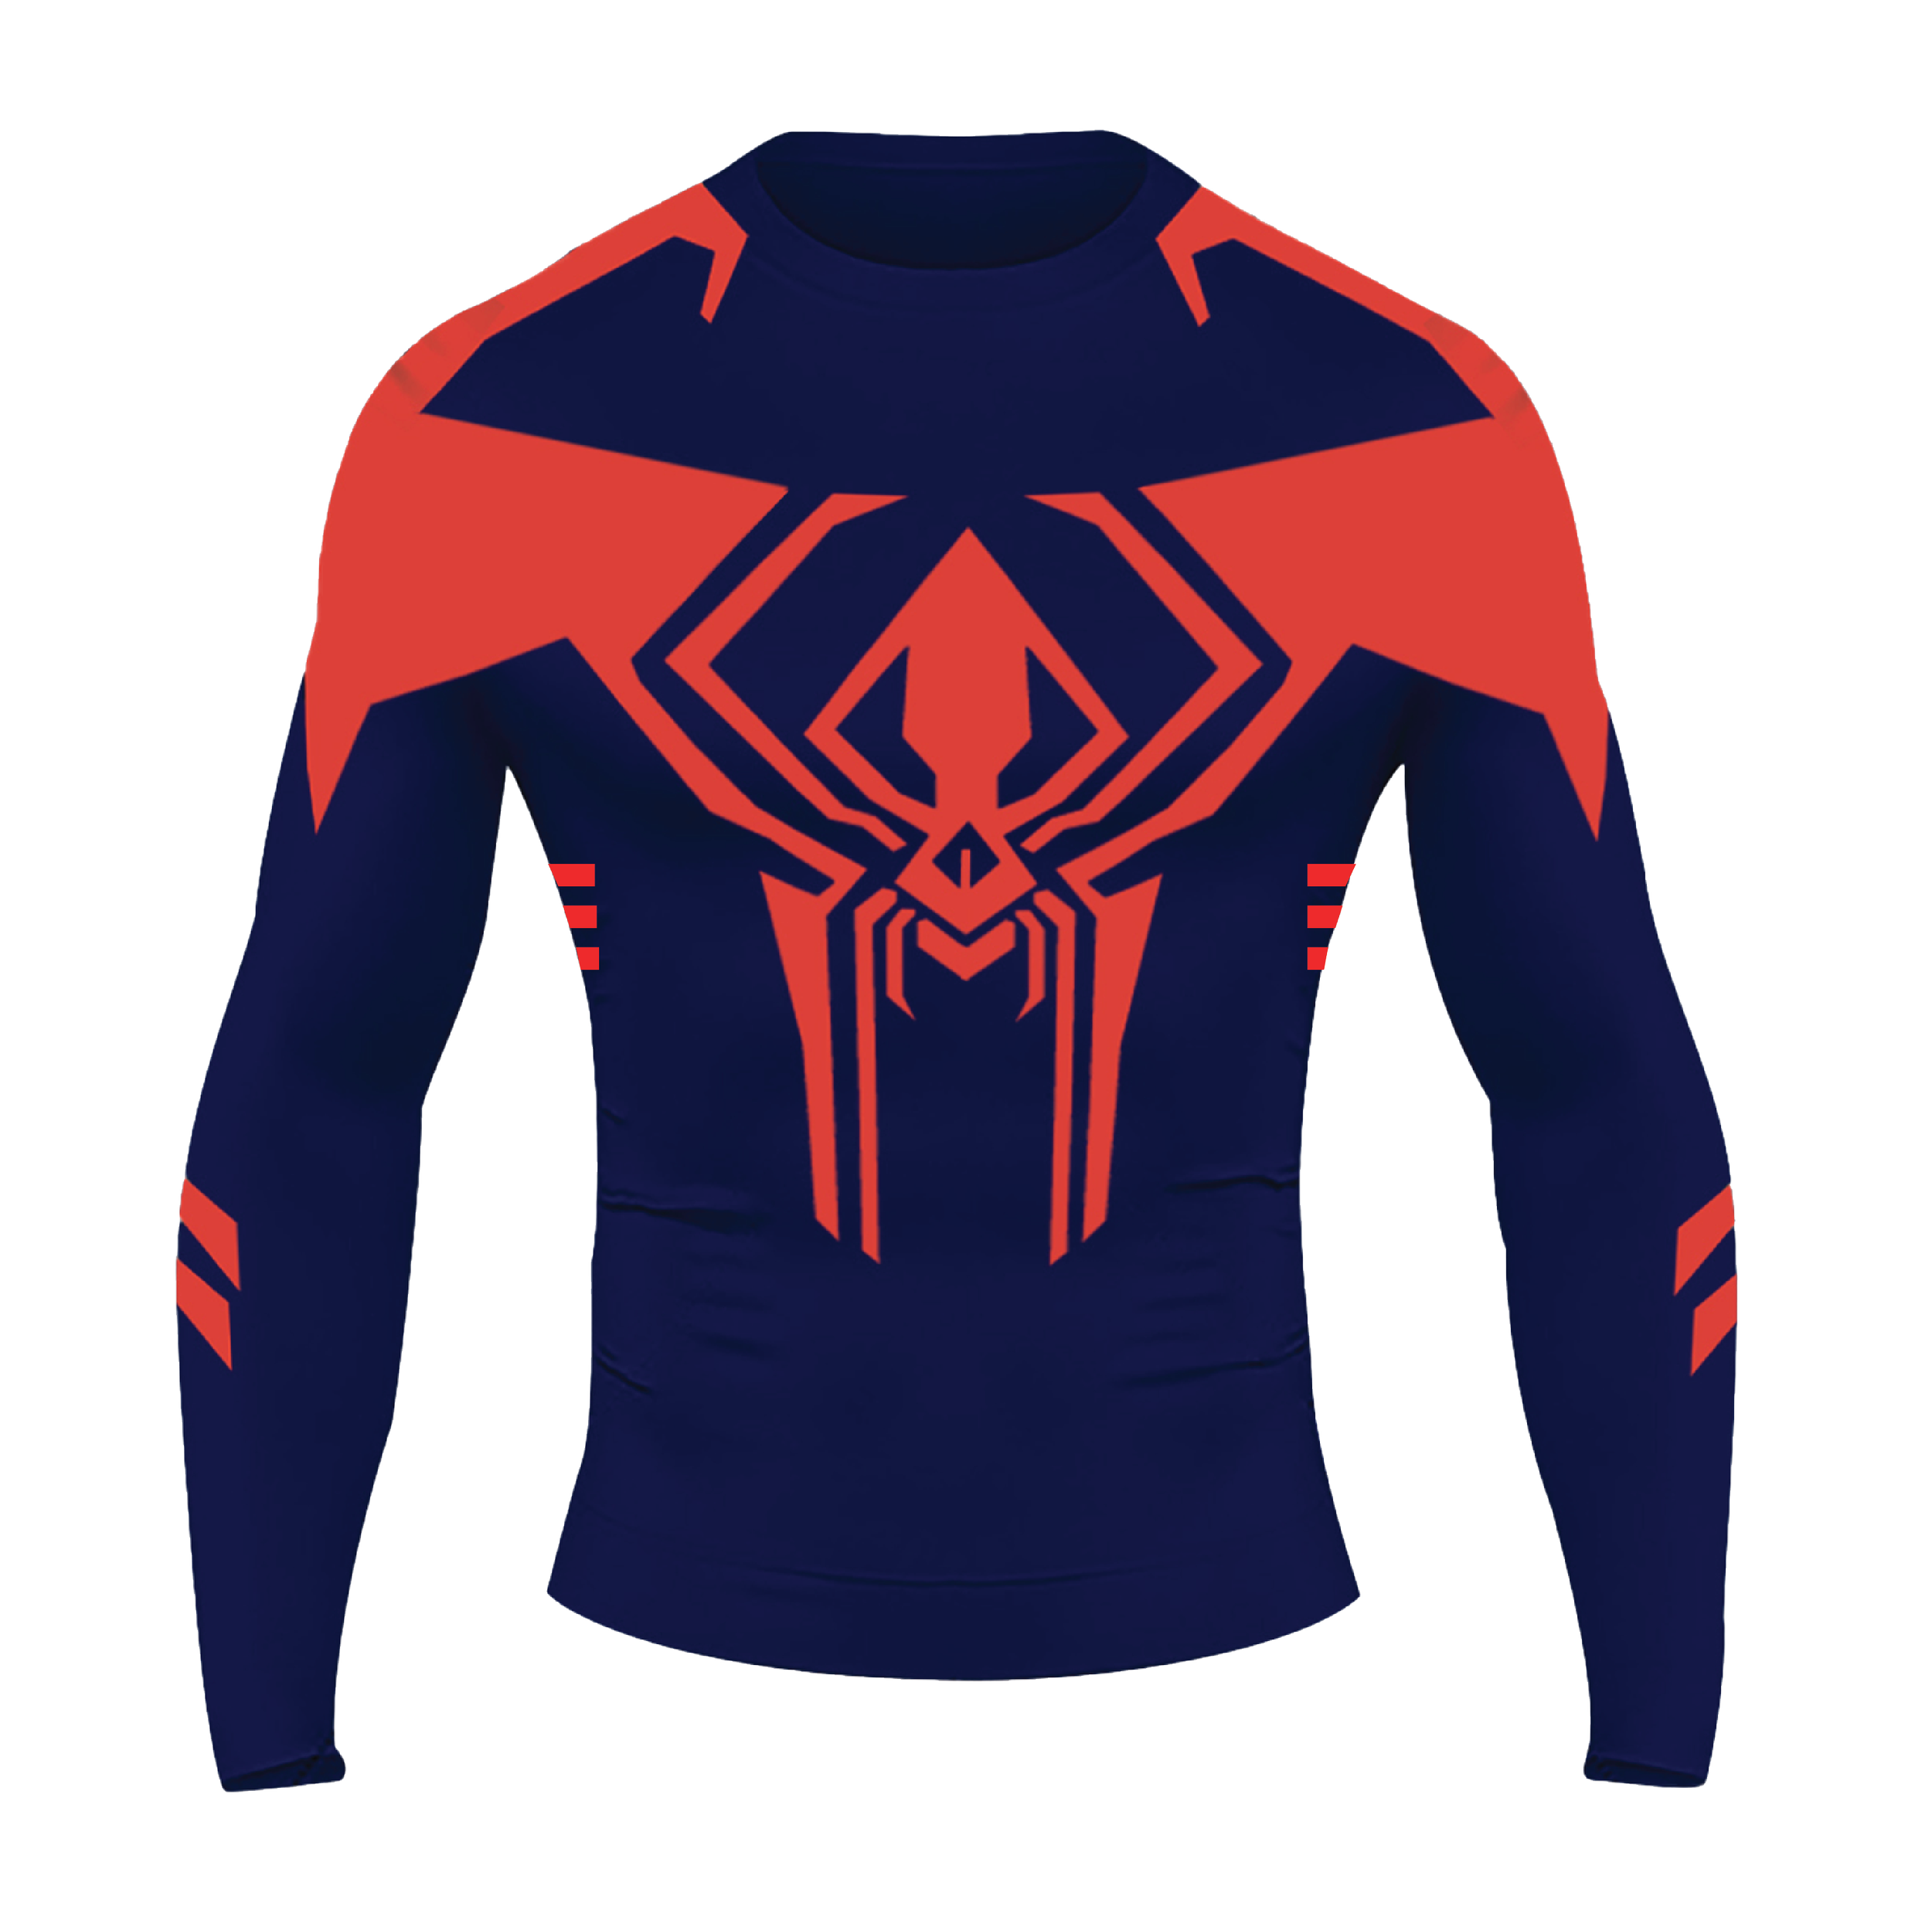 Spider-Man 2099 Compression Shirt — LeikamLabs